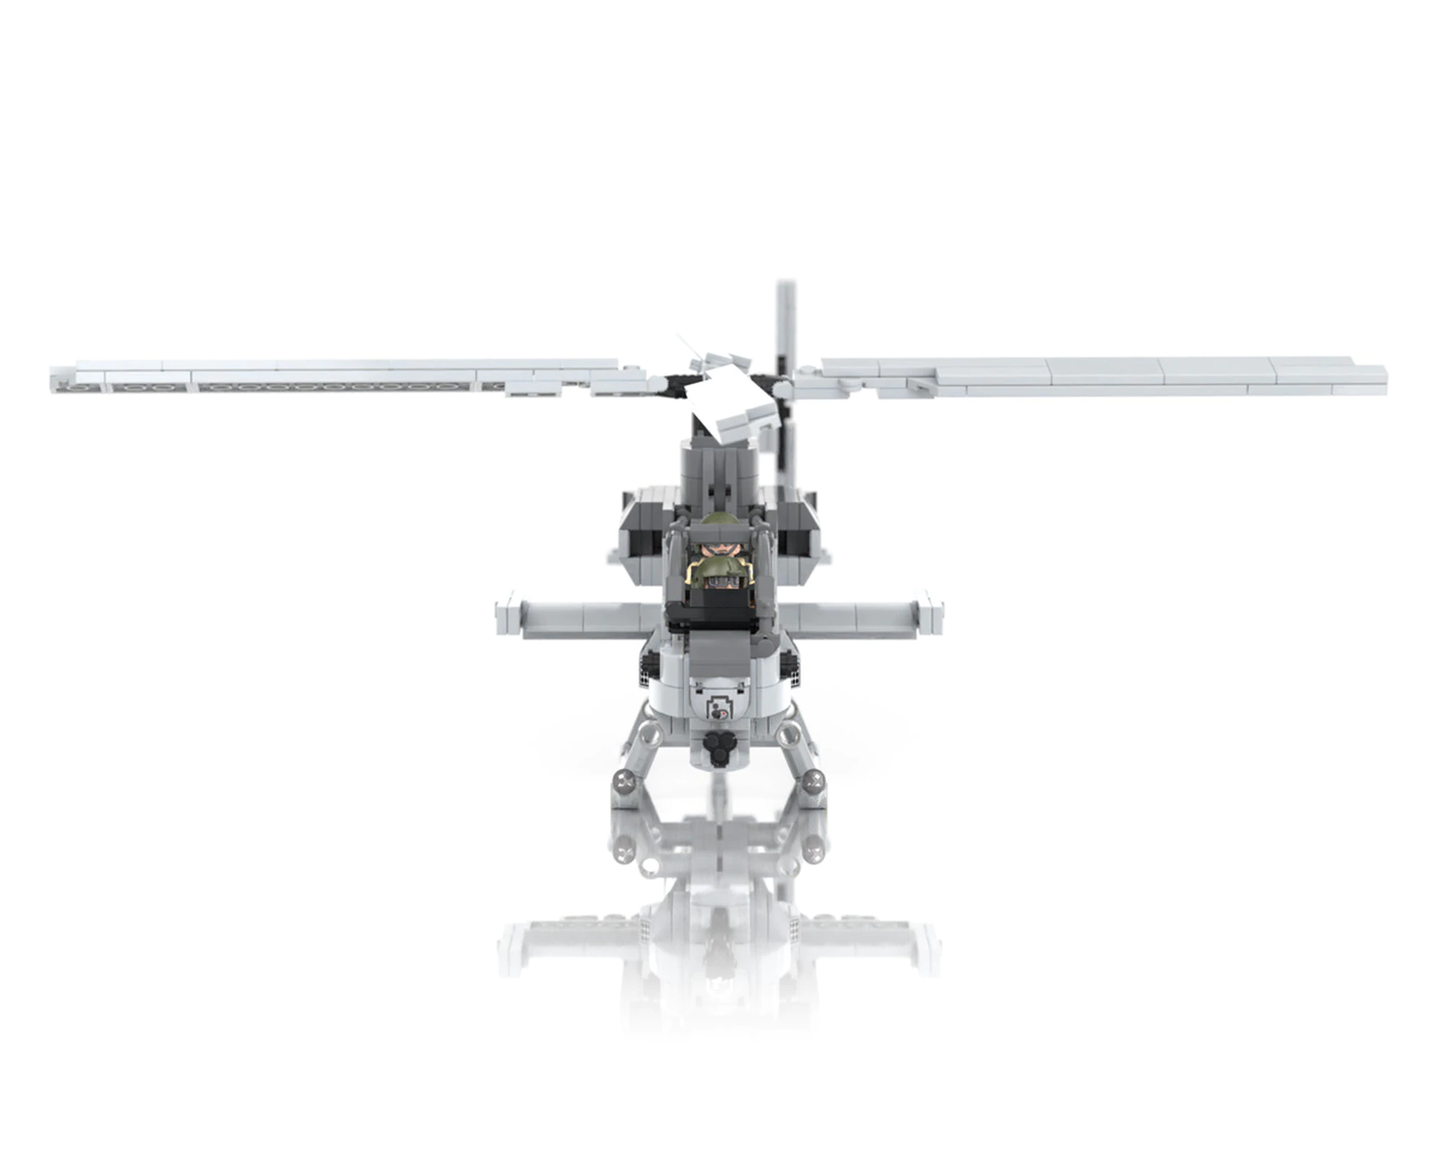 AH-1Z Viper - Zulu Cobra Attack Helicopter - MOMCOM inc.